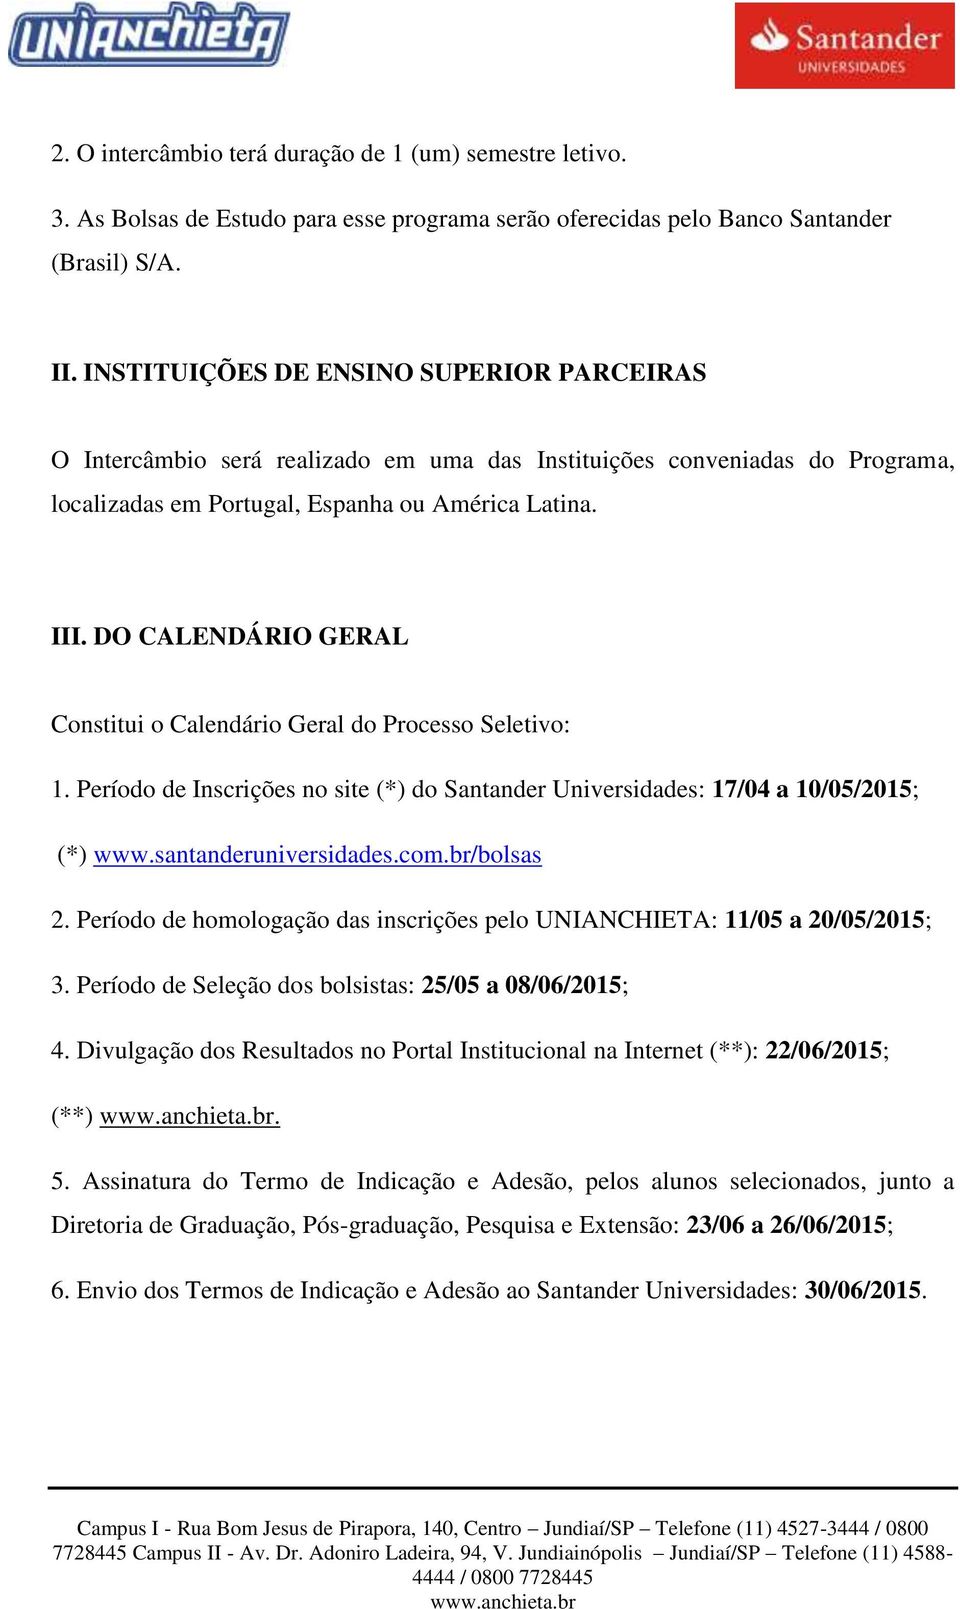 DO CALENDÁRIO GERAL Constitui o Calendário Geral do Processo Seletivo: 1. Período de Inscrições no site (*) do Santander Universidades: 17/04 a 10/05/2015; (*) www.santanderuniversidades.com.